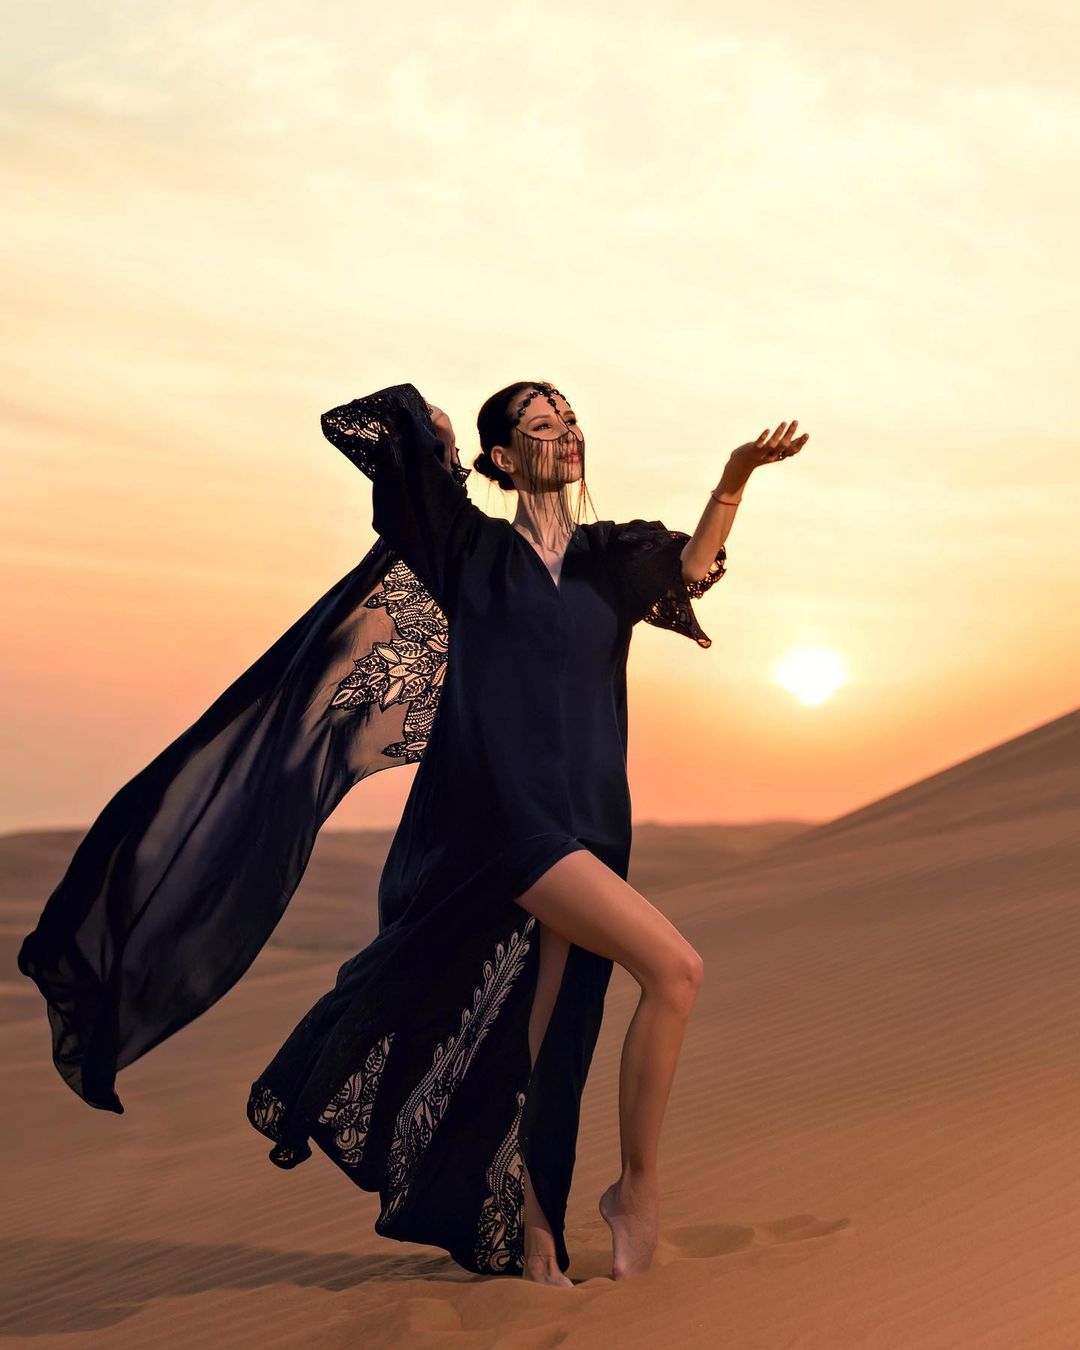 Ladies Desert Photoshoot In Dubai, United Arab Emirates.